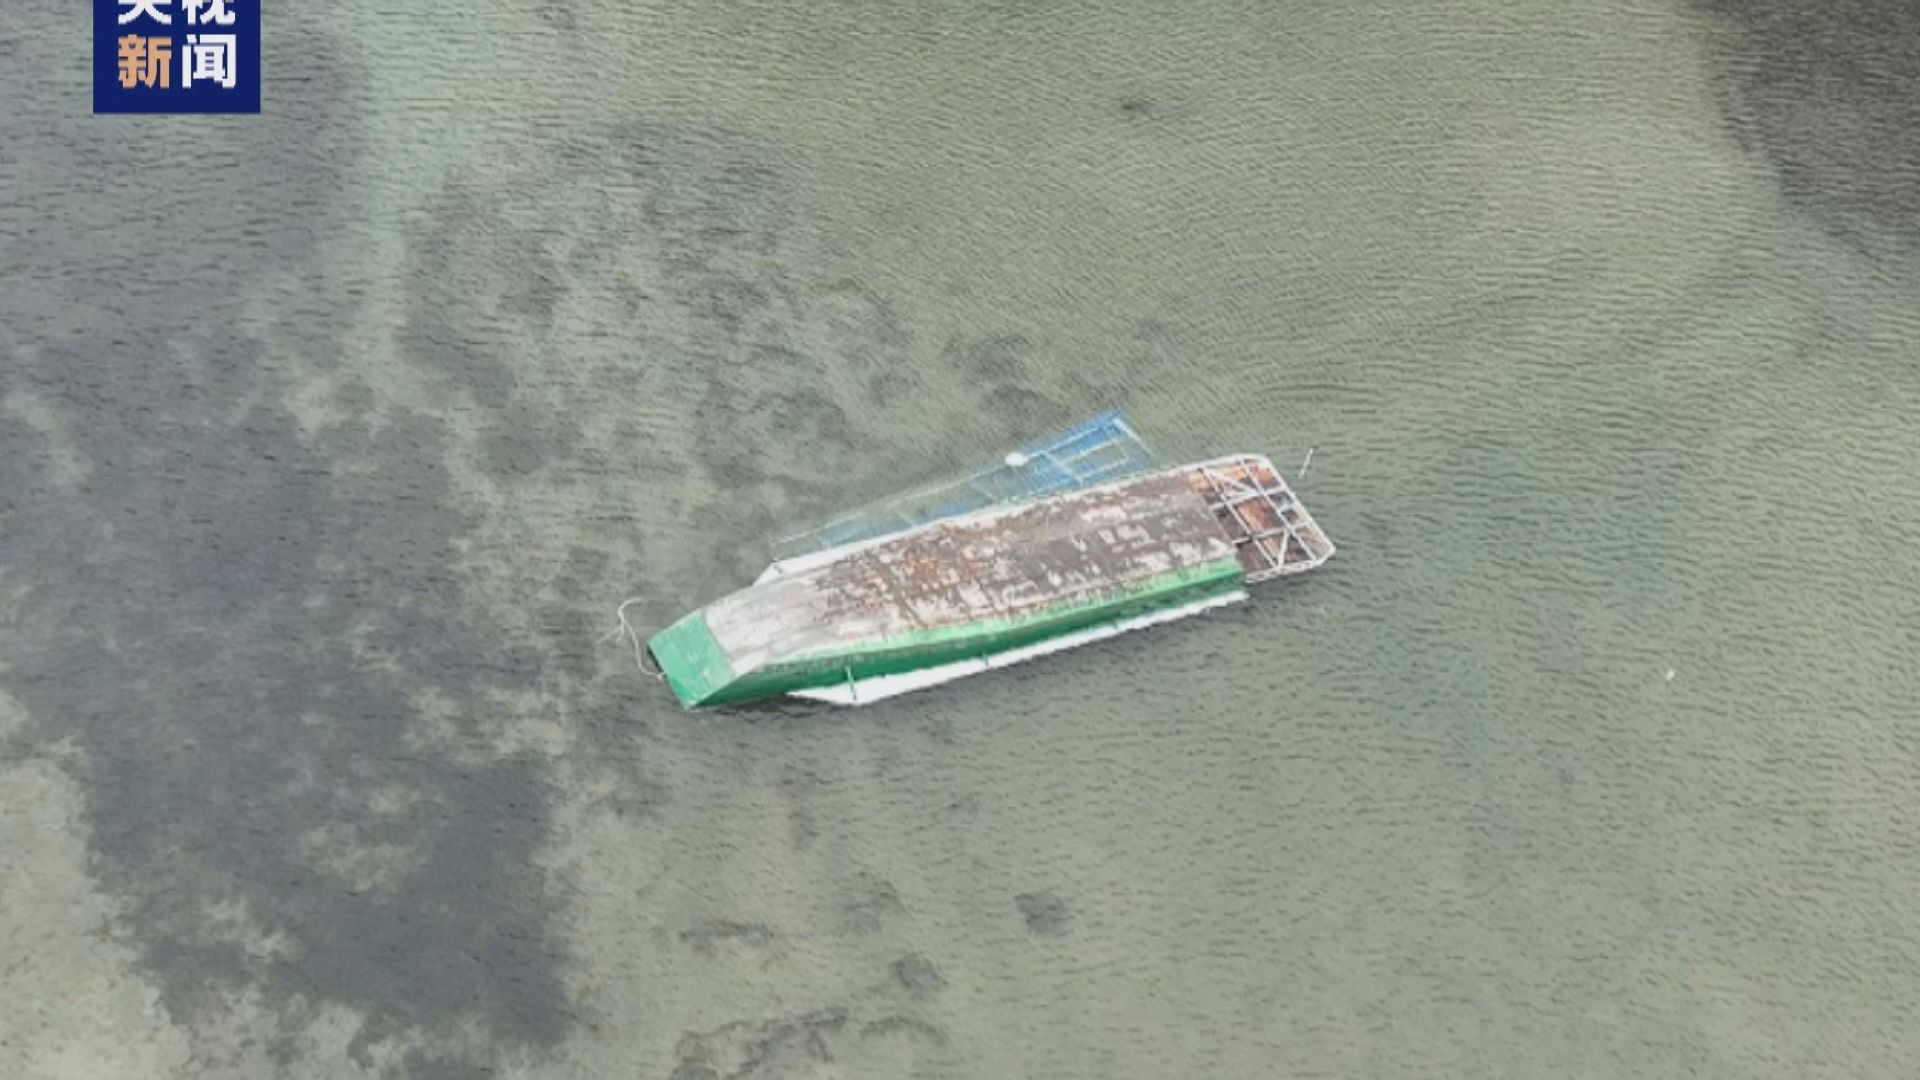 河北秦皇島有村民自製的觀光船翻側 12人死亡